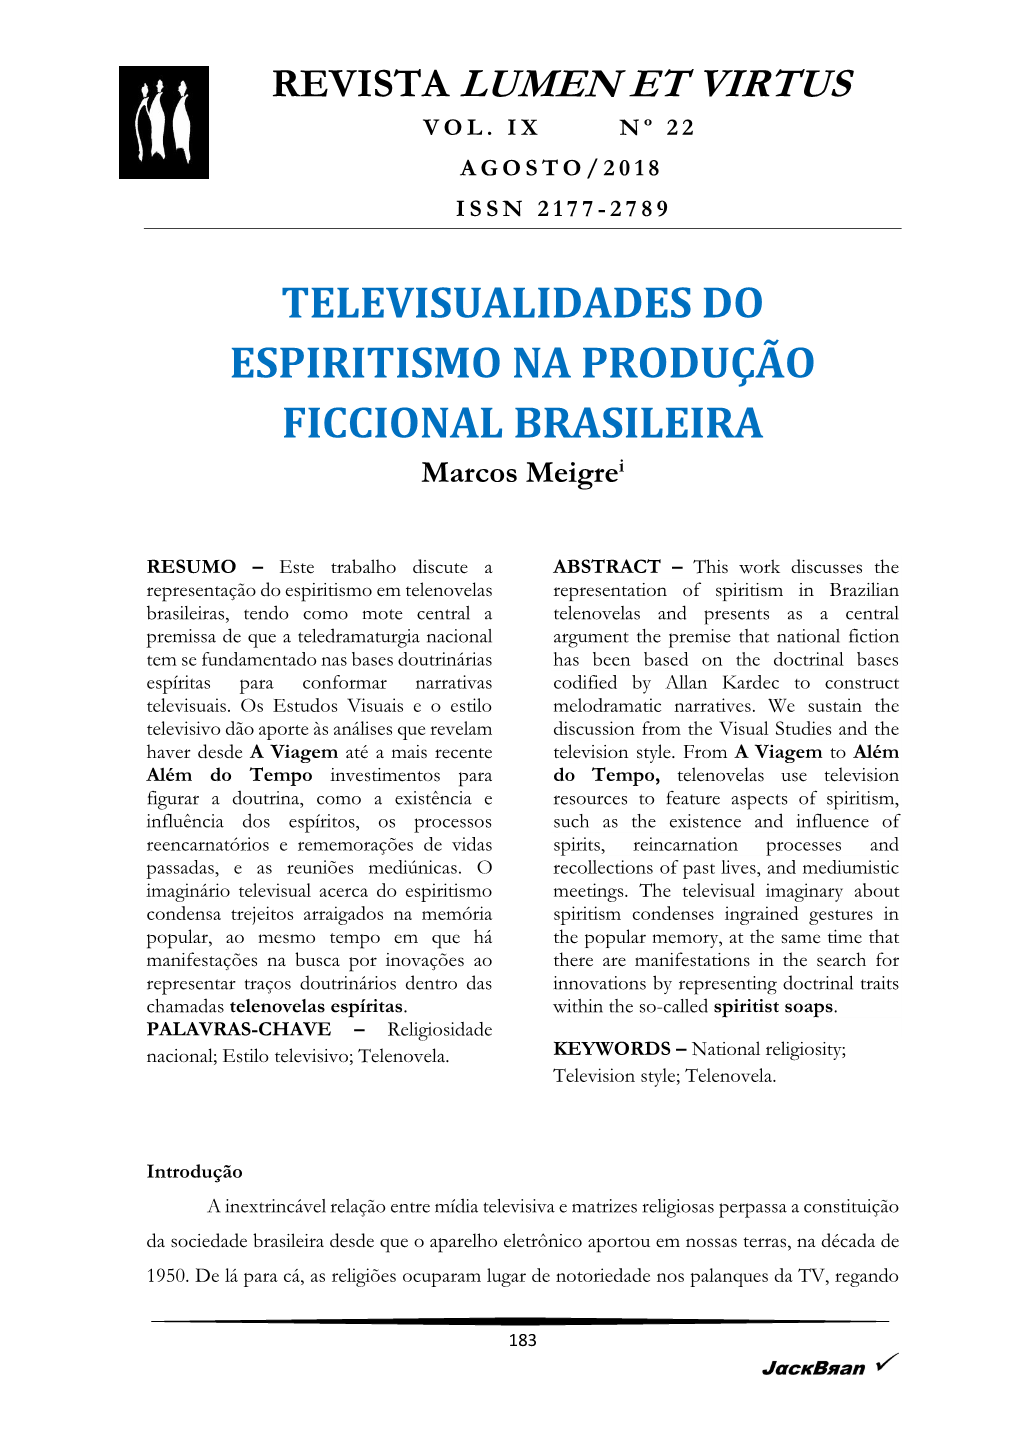 TELEVISUALIDADES DO ESPIRITISMO NA PRODUÇÃO FICCIONAL BRASILEIRA Marcos Meigrei